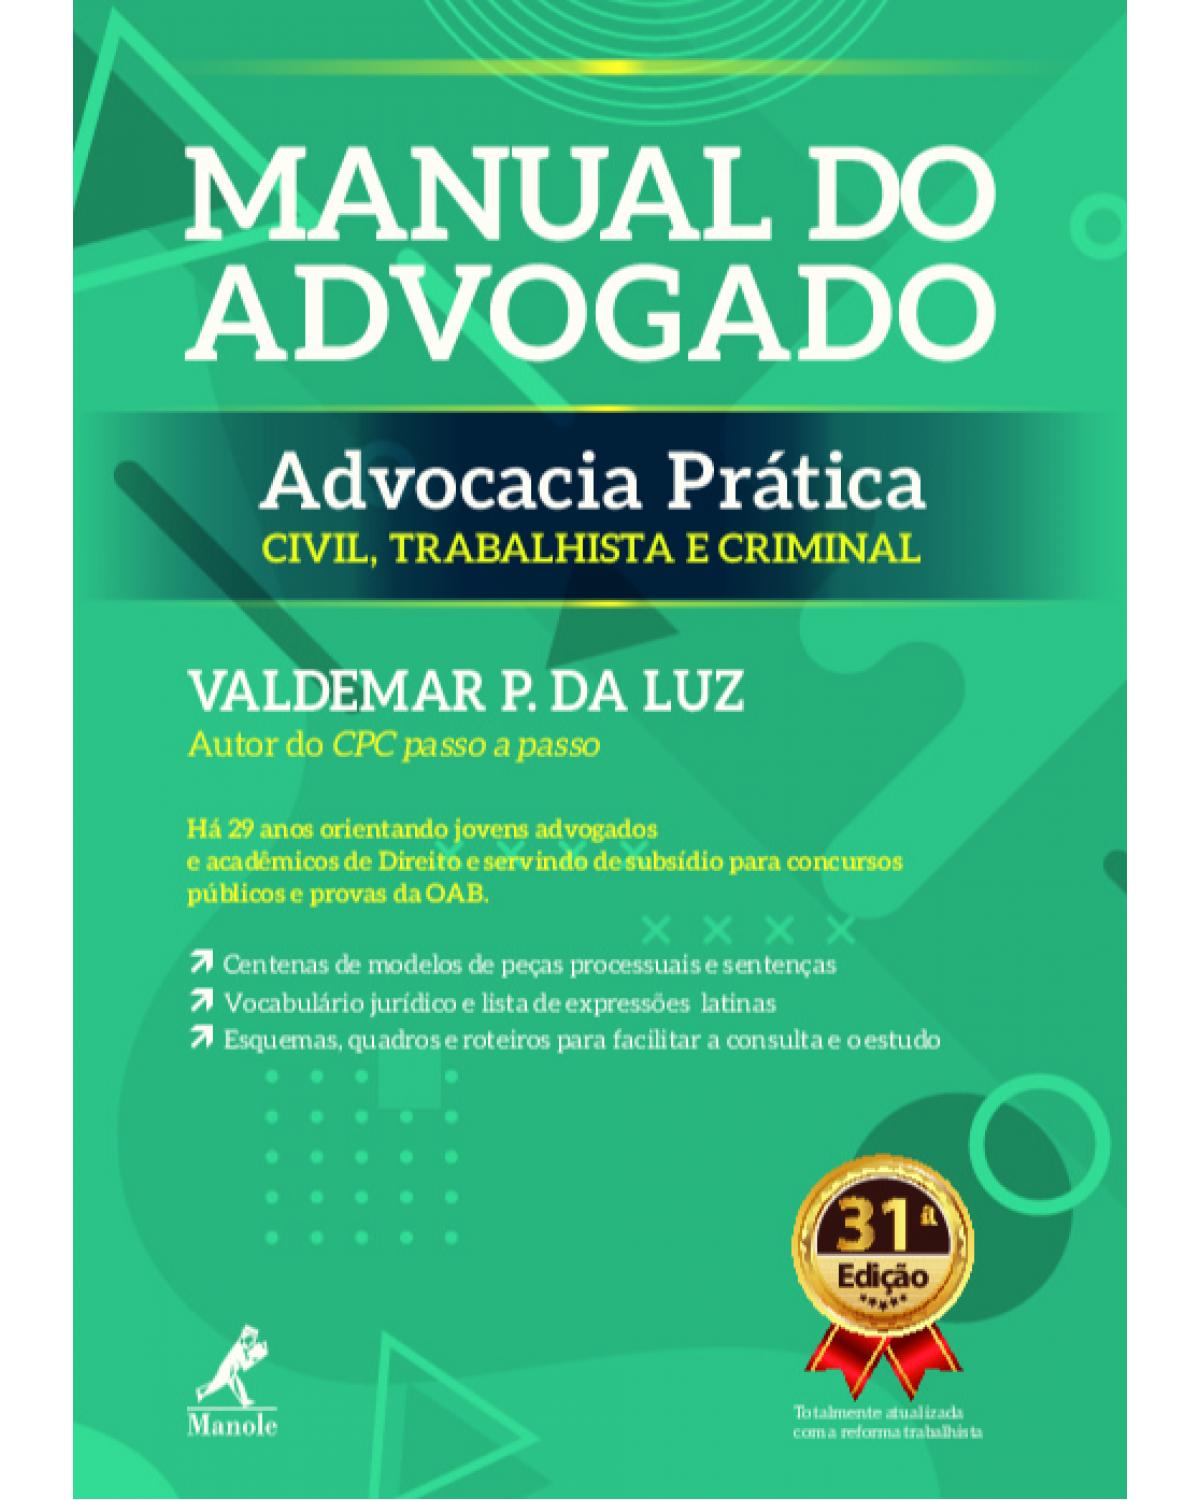 Manual do advogado - advocacia prática civil, trabalhista e criminal - 31ª Edição | 2018